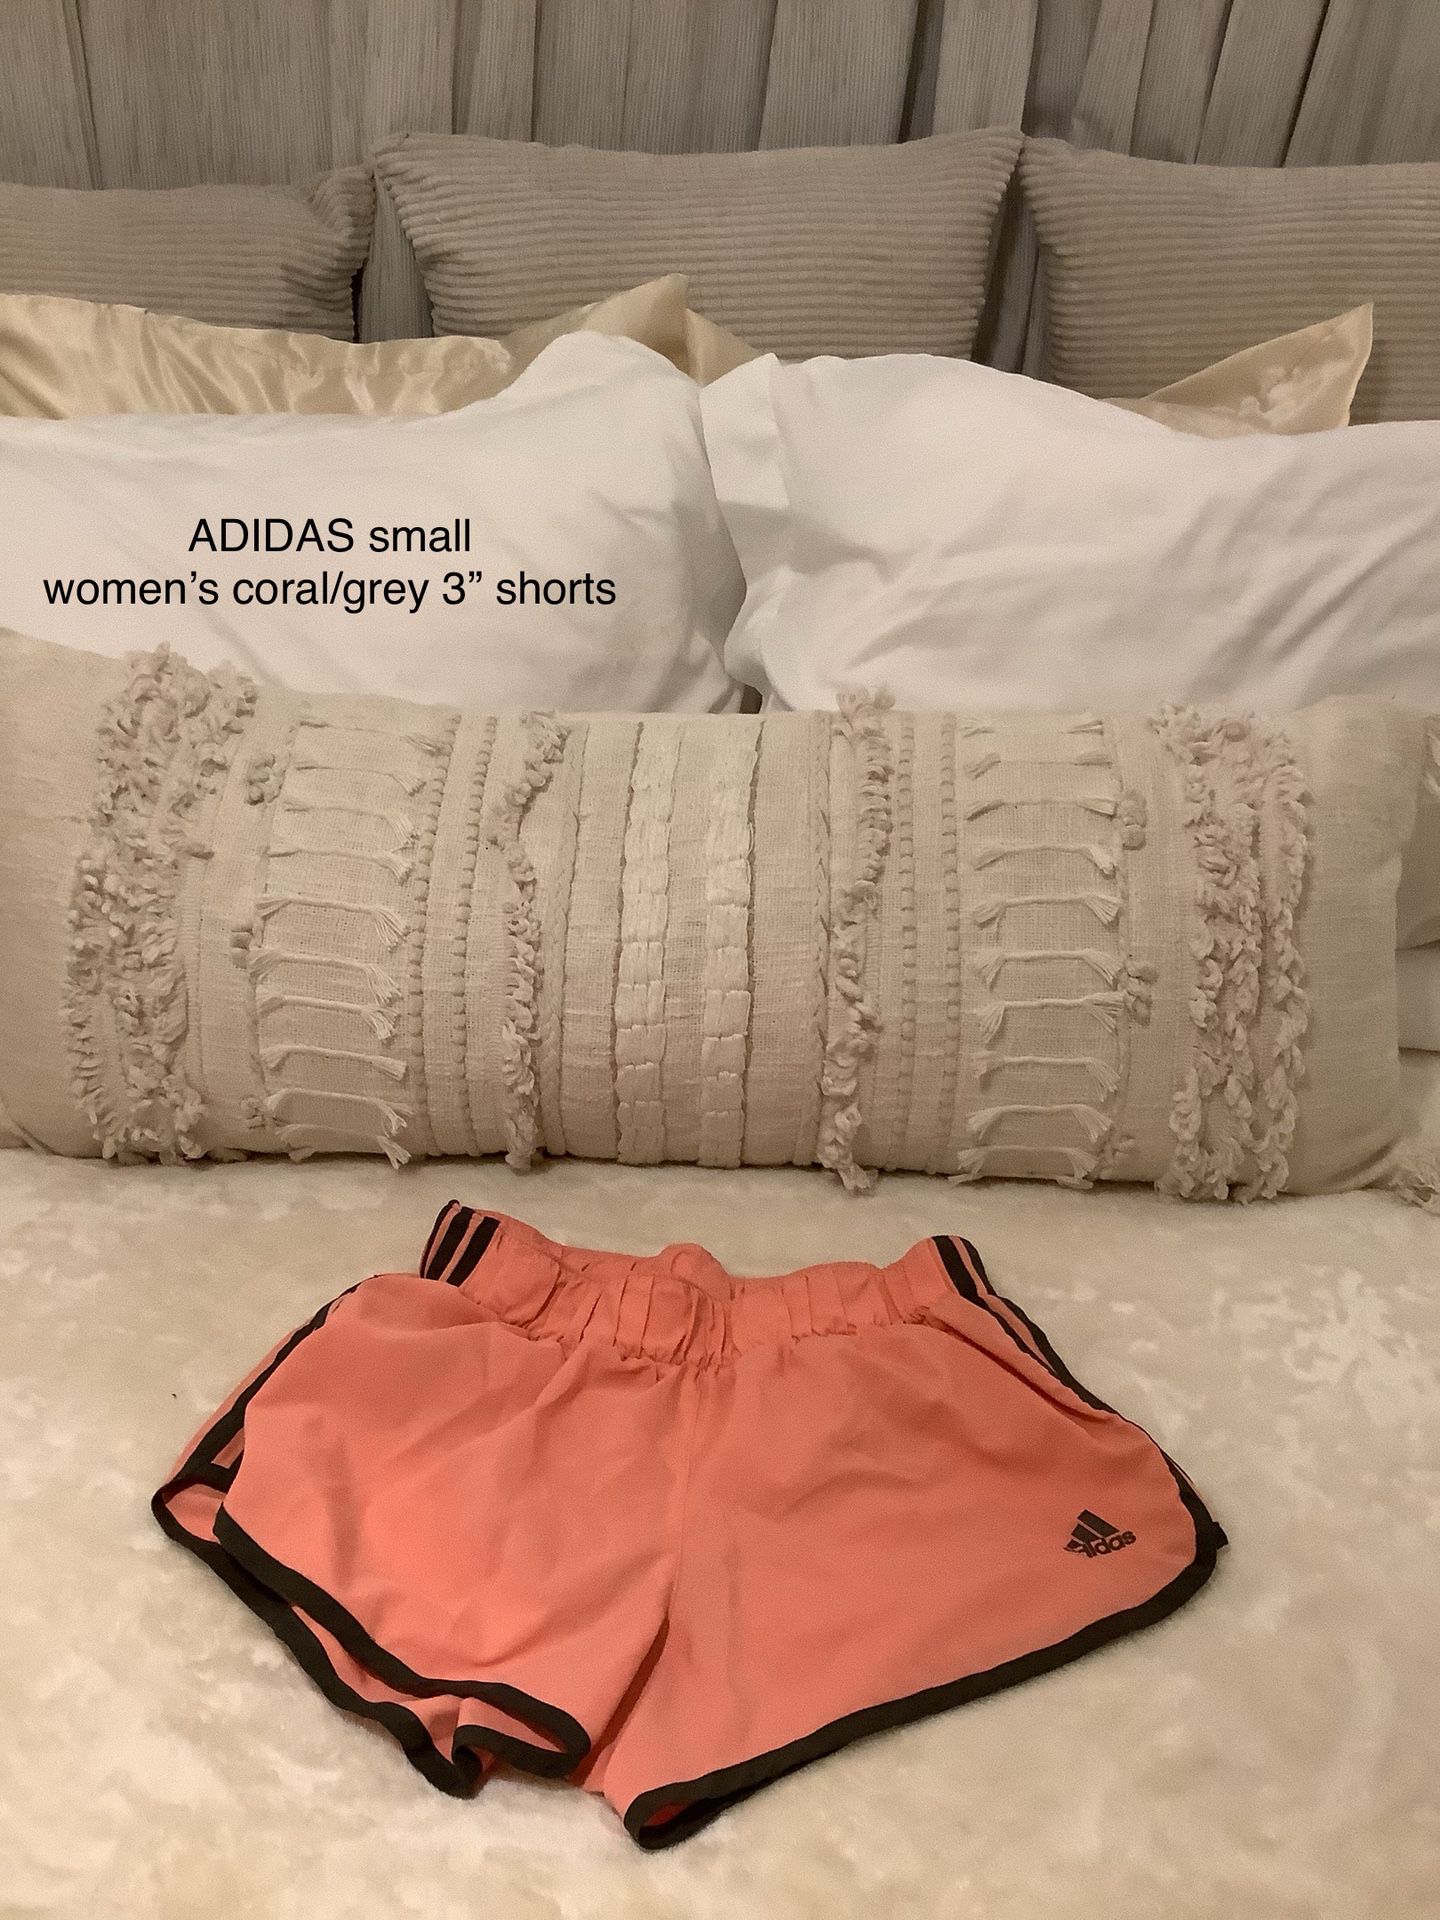 ADIDAS women’s Small Coral/gray Shorts